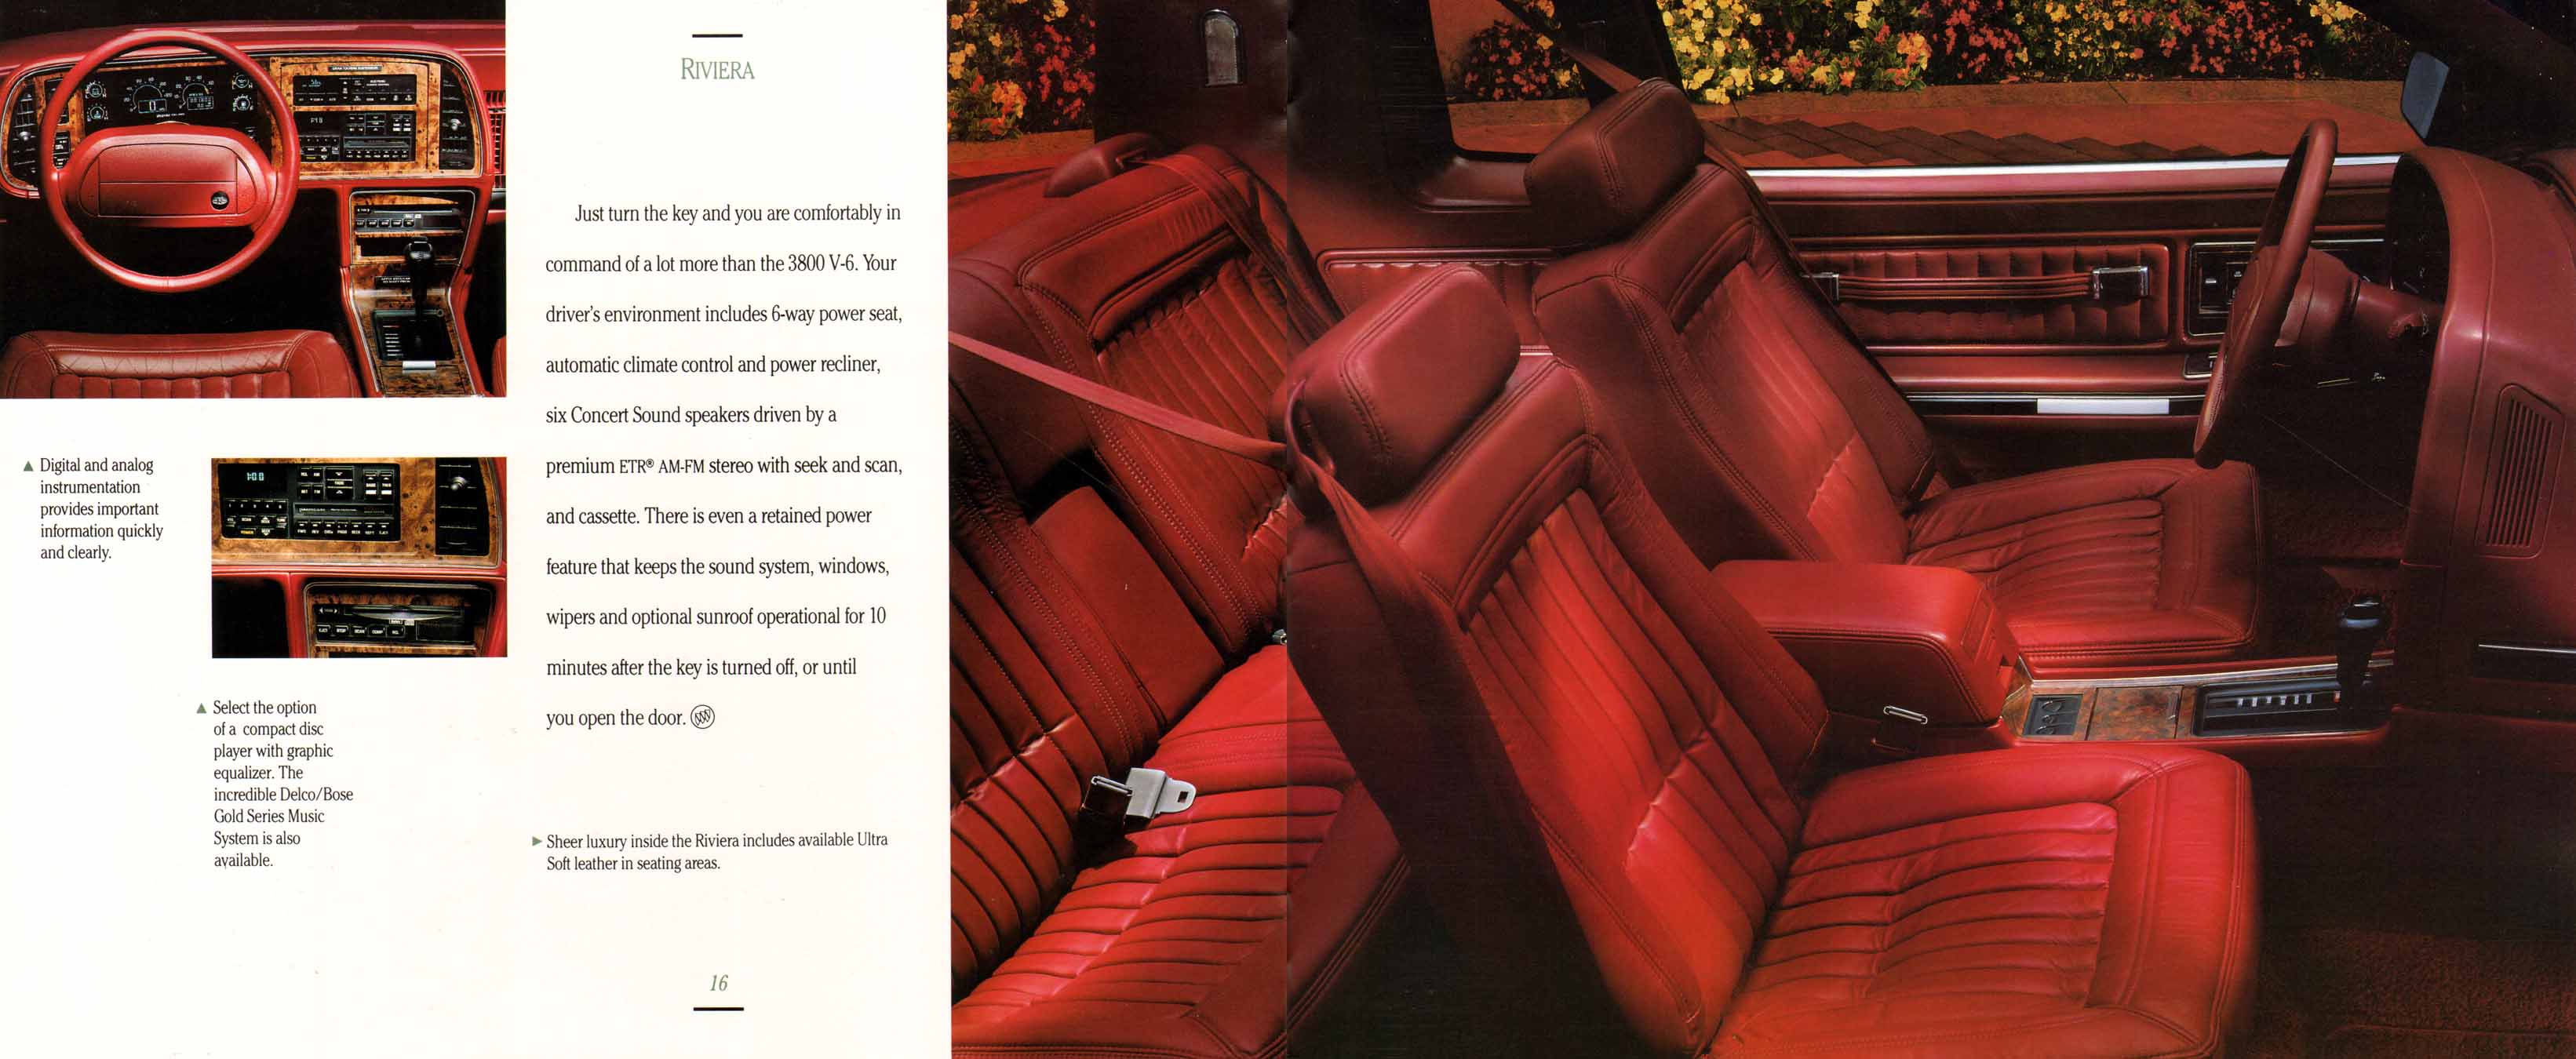 1992 Buick Full Line Prestige-16-17